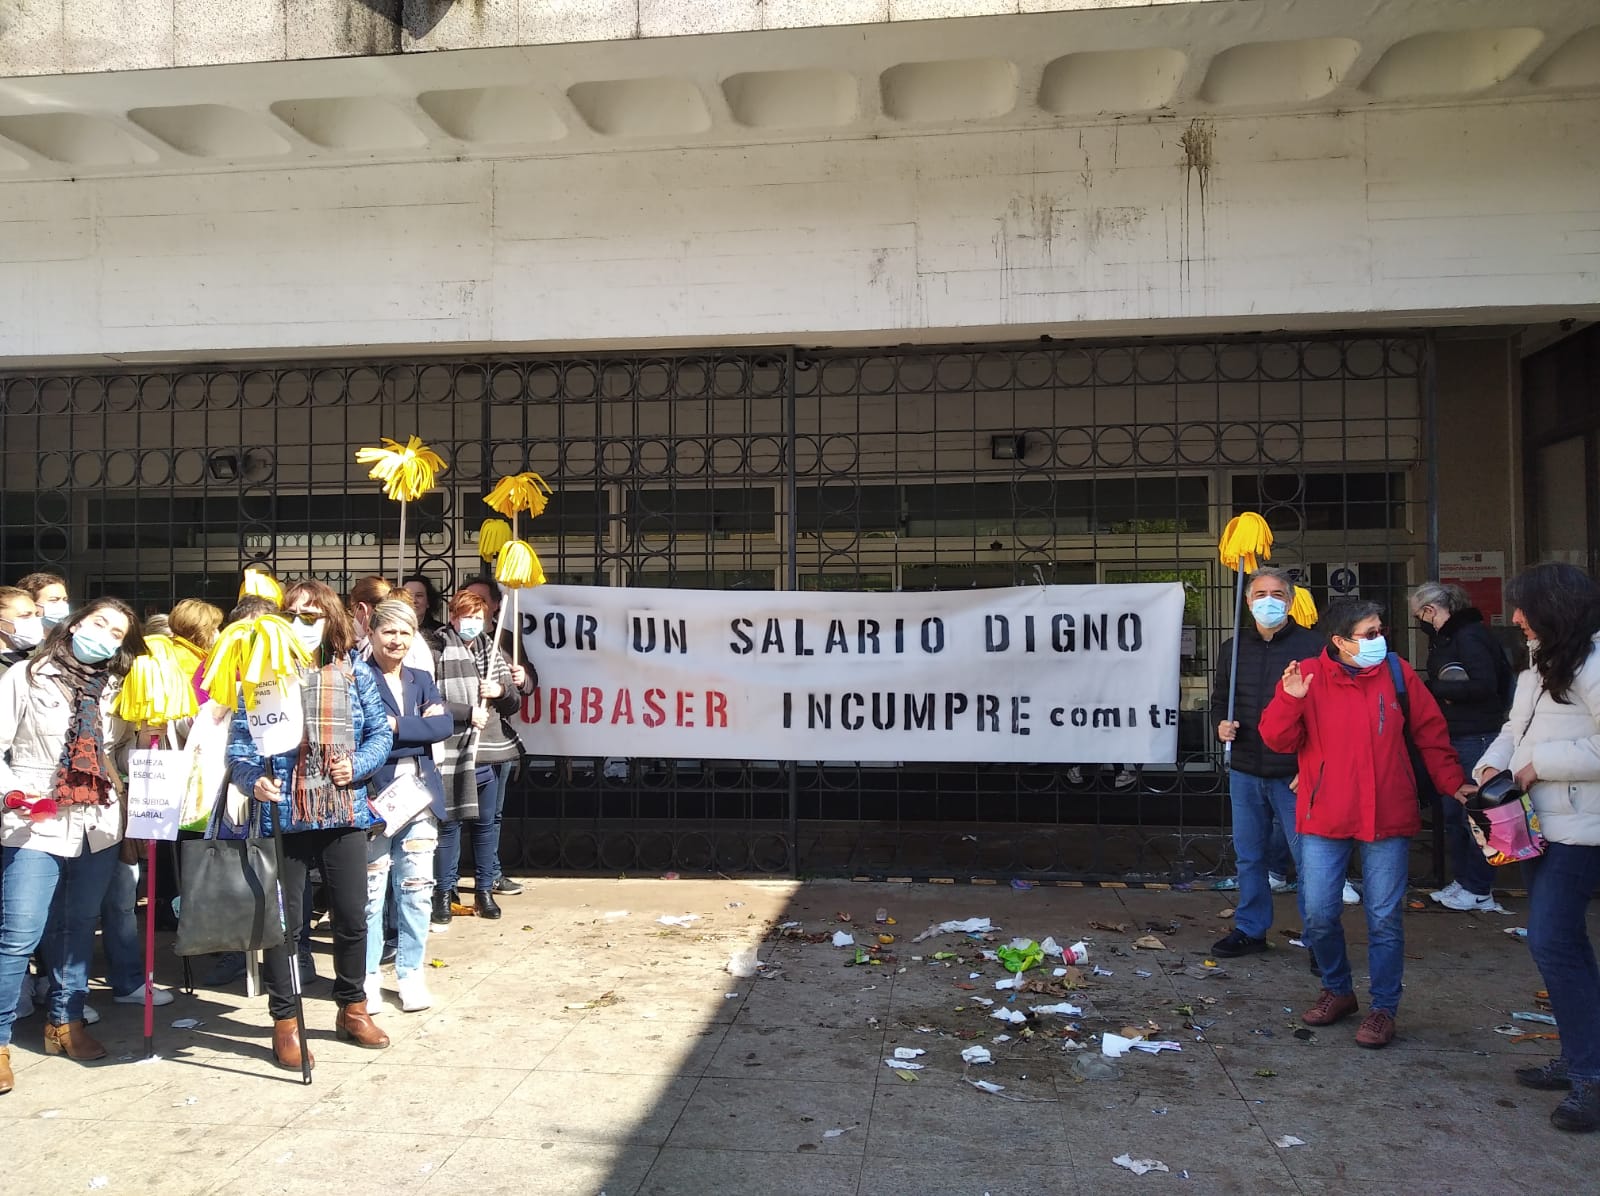 La Alcaldía asegura que los servicios mínimos respetan el derecho a la huelga de los trabajadores de limpieza